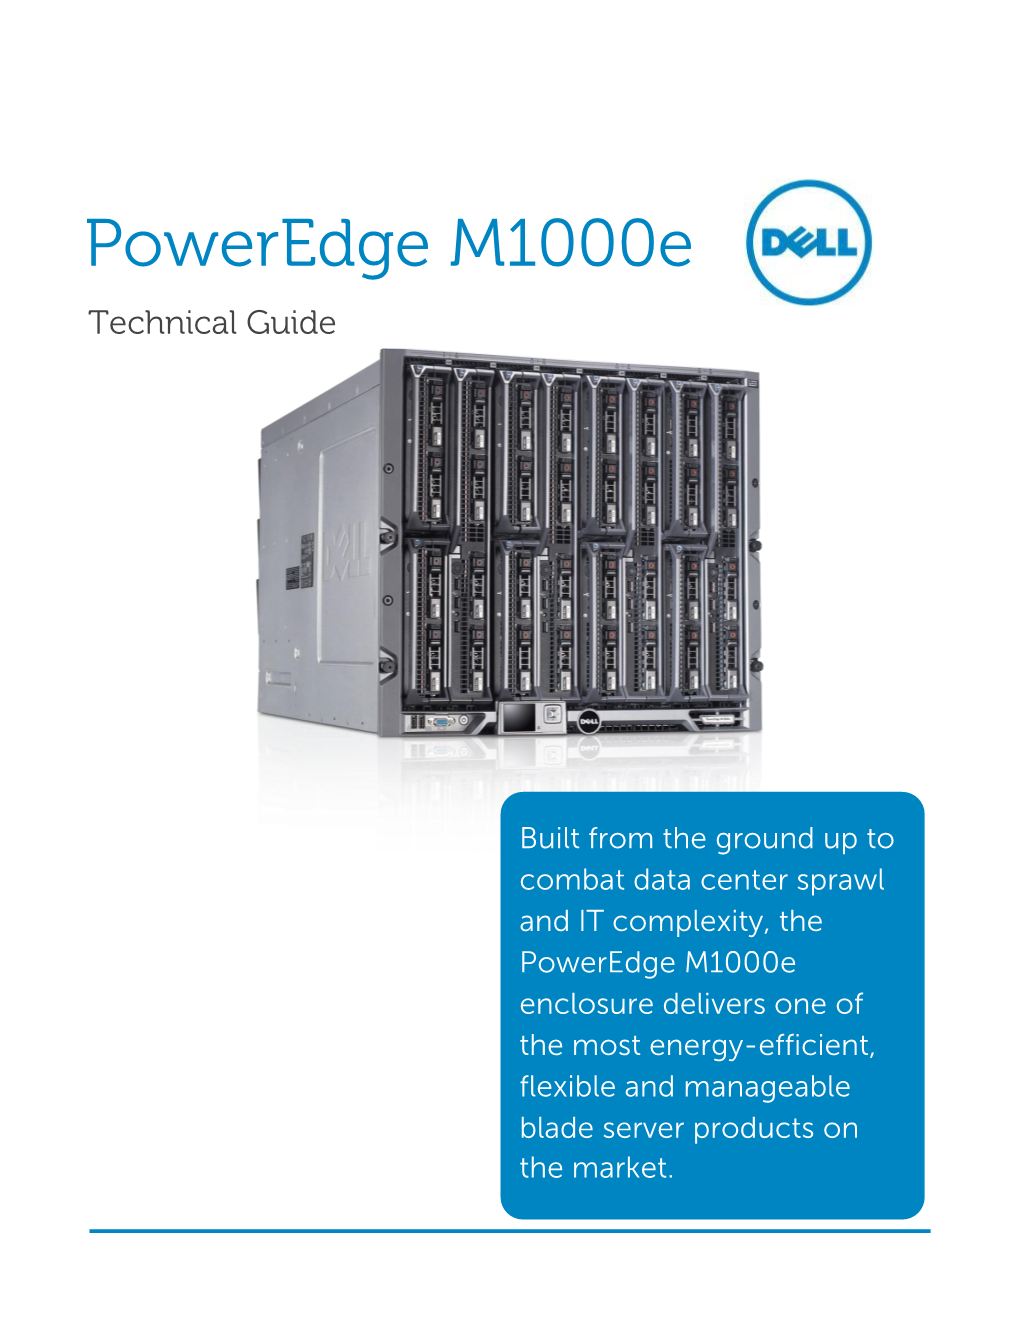 Dell Poweredge M1000e Technical Guide